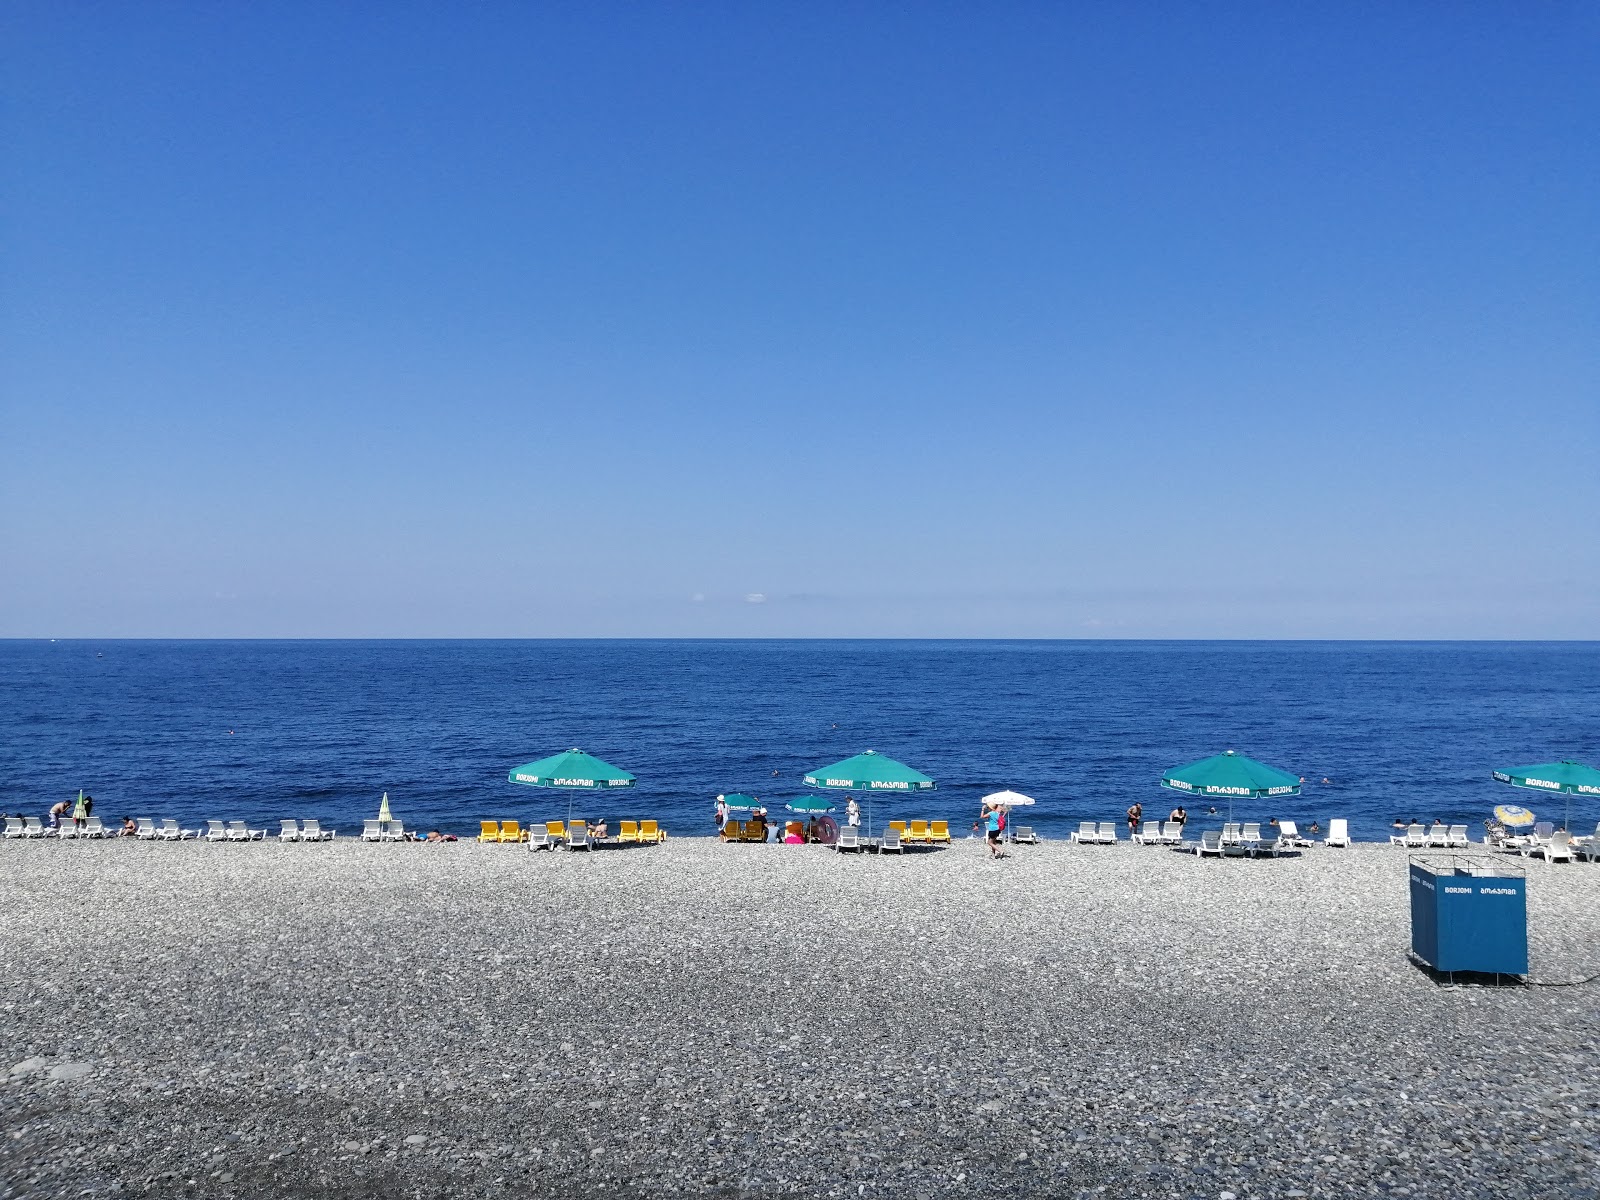 Zdjęcie Sarpi beach z przestronna plaża